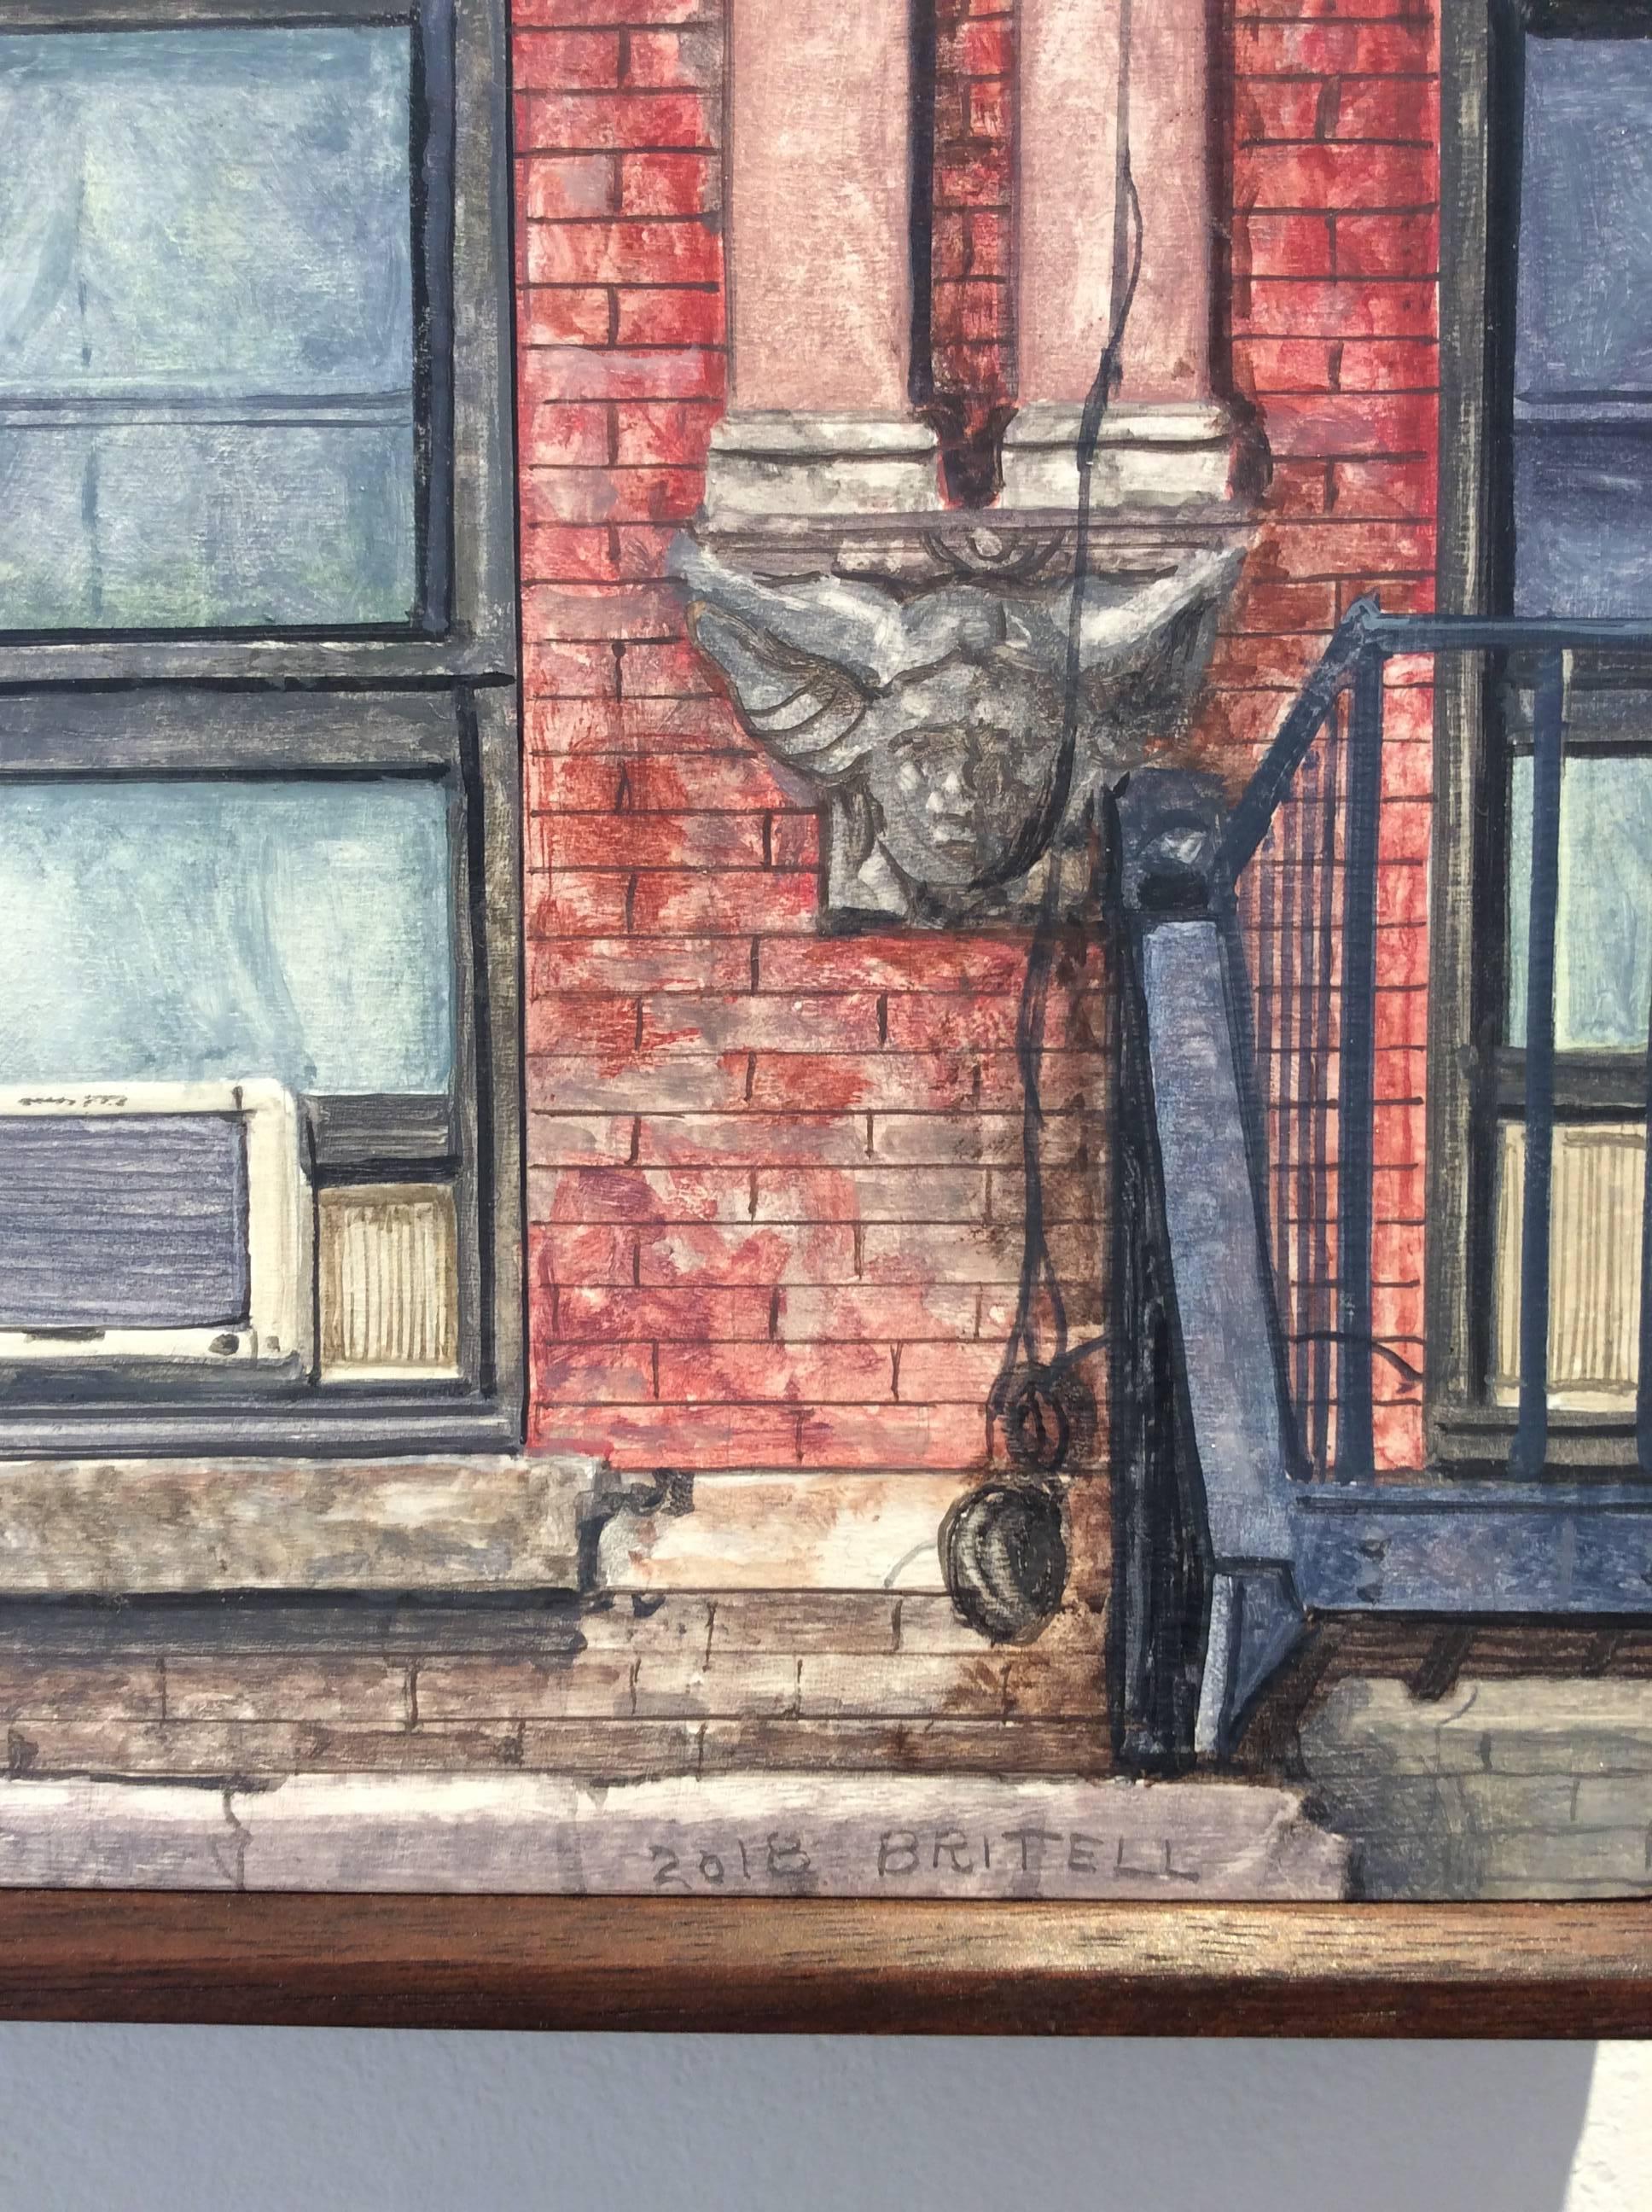 Fotorealistisches Ölgemälde eines roten Backsteingebäudes in der Madison Street in Manhattans Lower East Side. 
öl auf Holz in einem vom Künstler angefertigten Rahmen aus dunklem Holz
10 x 8 Zoll

Dieses zeitgenössische, realistische Ölgemälde eines